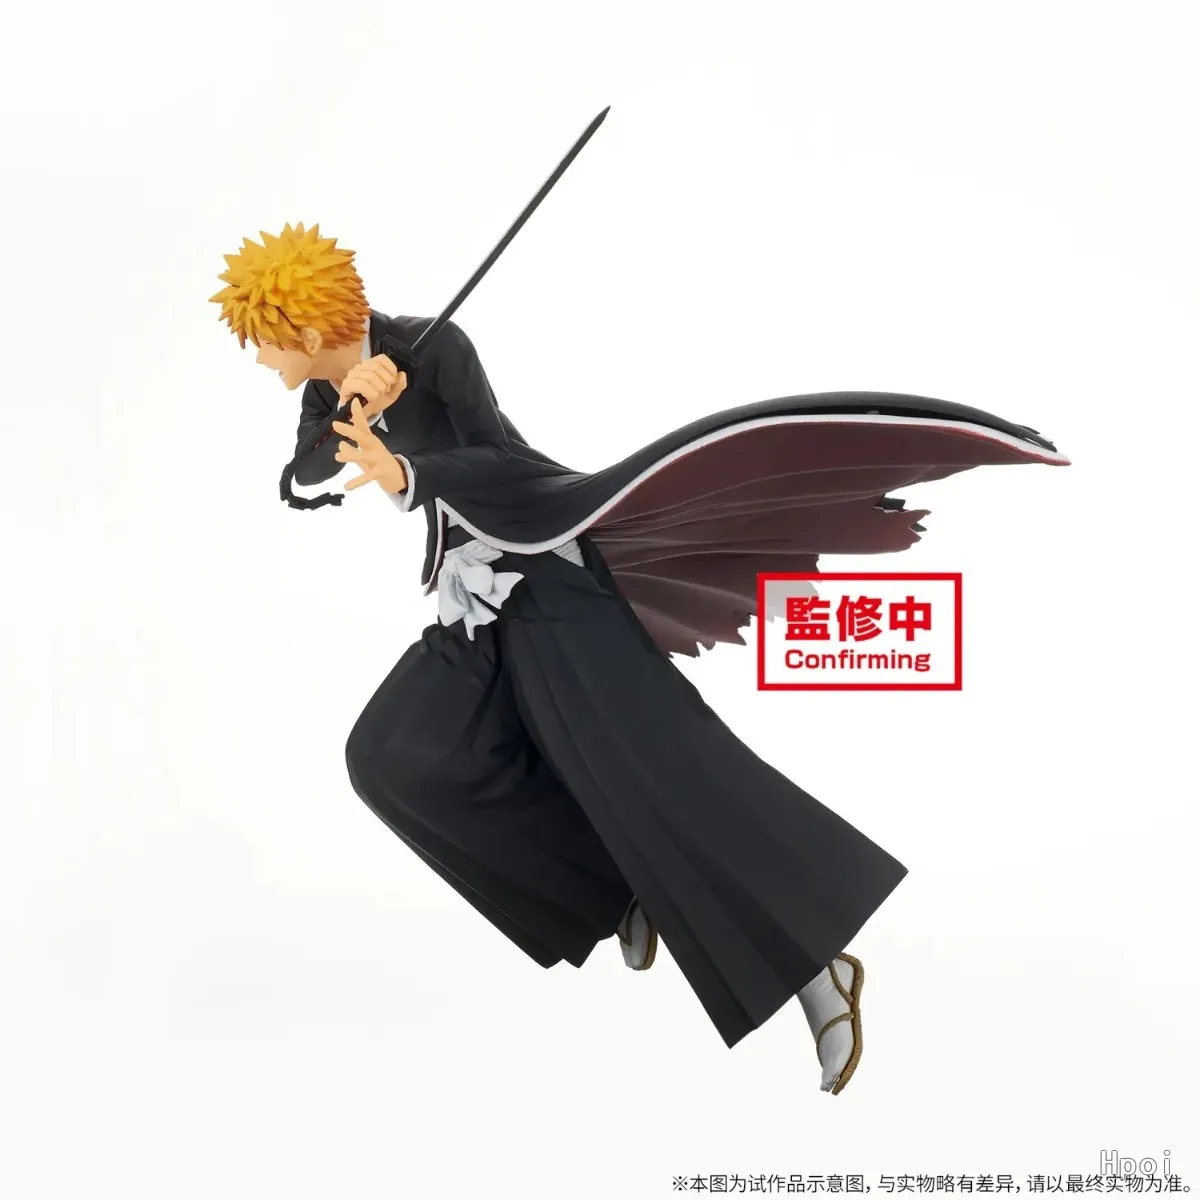 BLEACH Anime Kurosaki Ichigo PVC Figura de Acción de Ornamentos 100% Original, Genuina Modelo de la Colección de Muñecas Juguetes de Realshot . ' - ' . 1